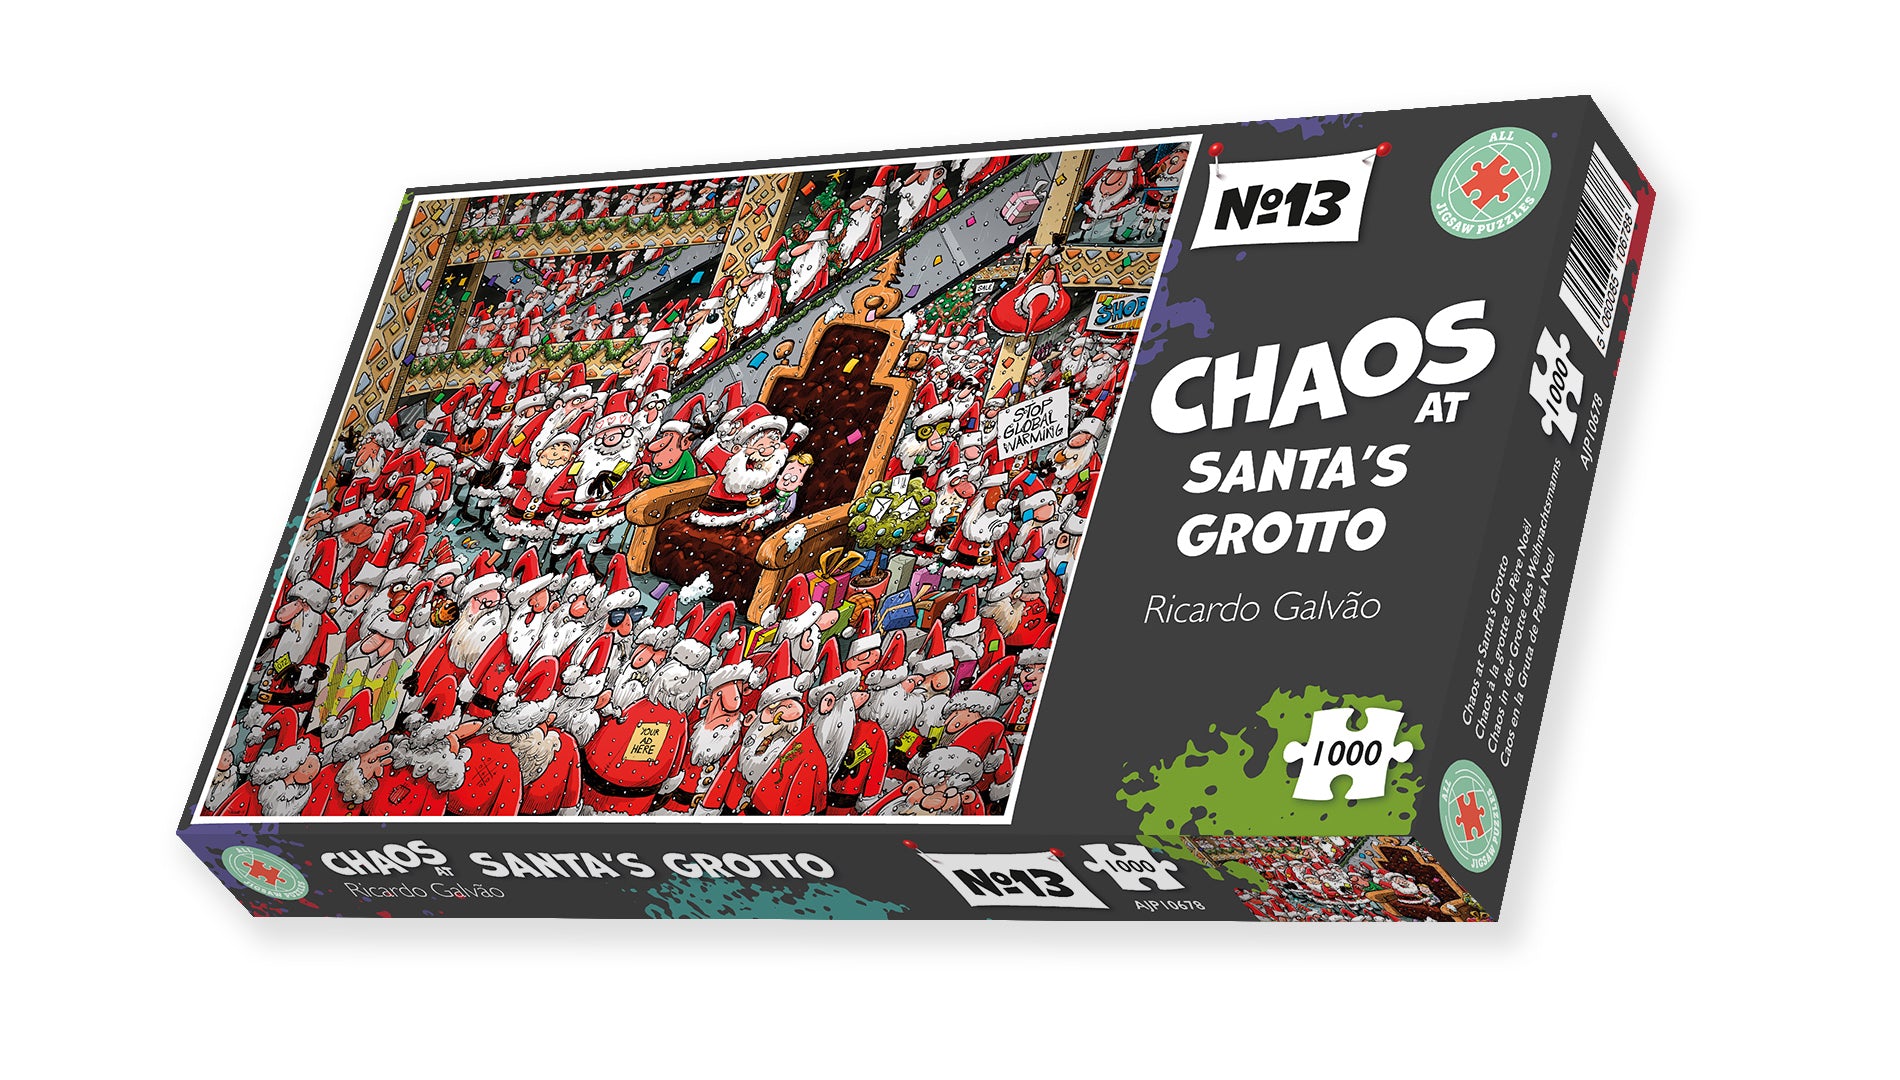 Chaos at Santa's Grotto - No. 14 1000 Christmas jigsaw puzzle